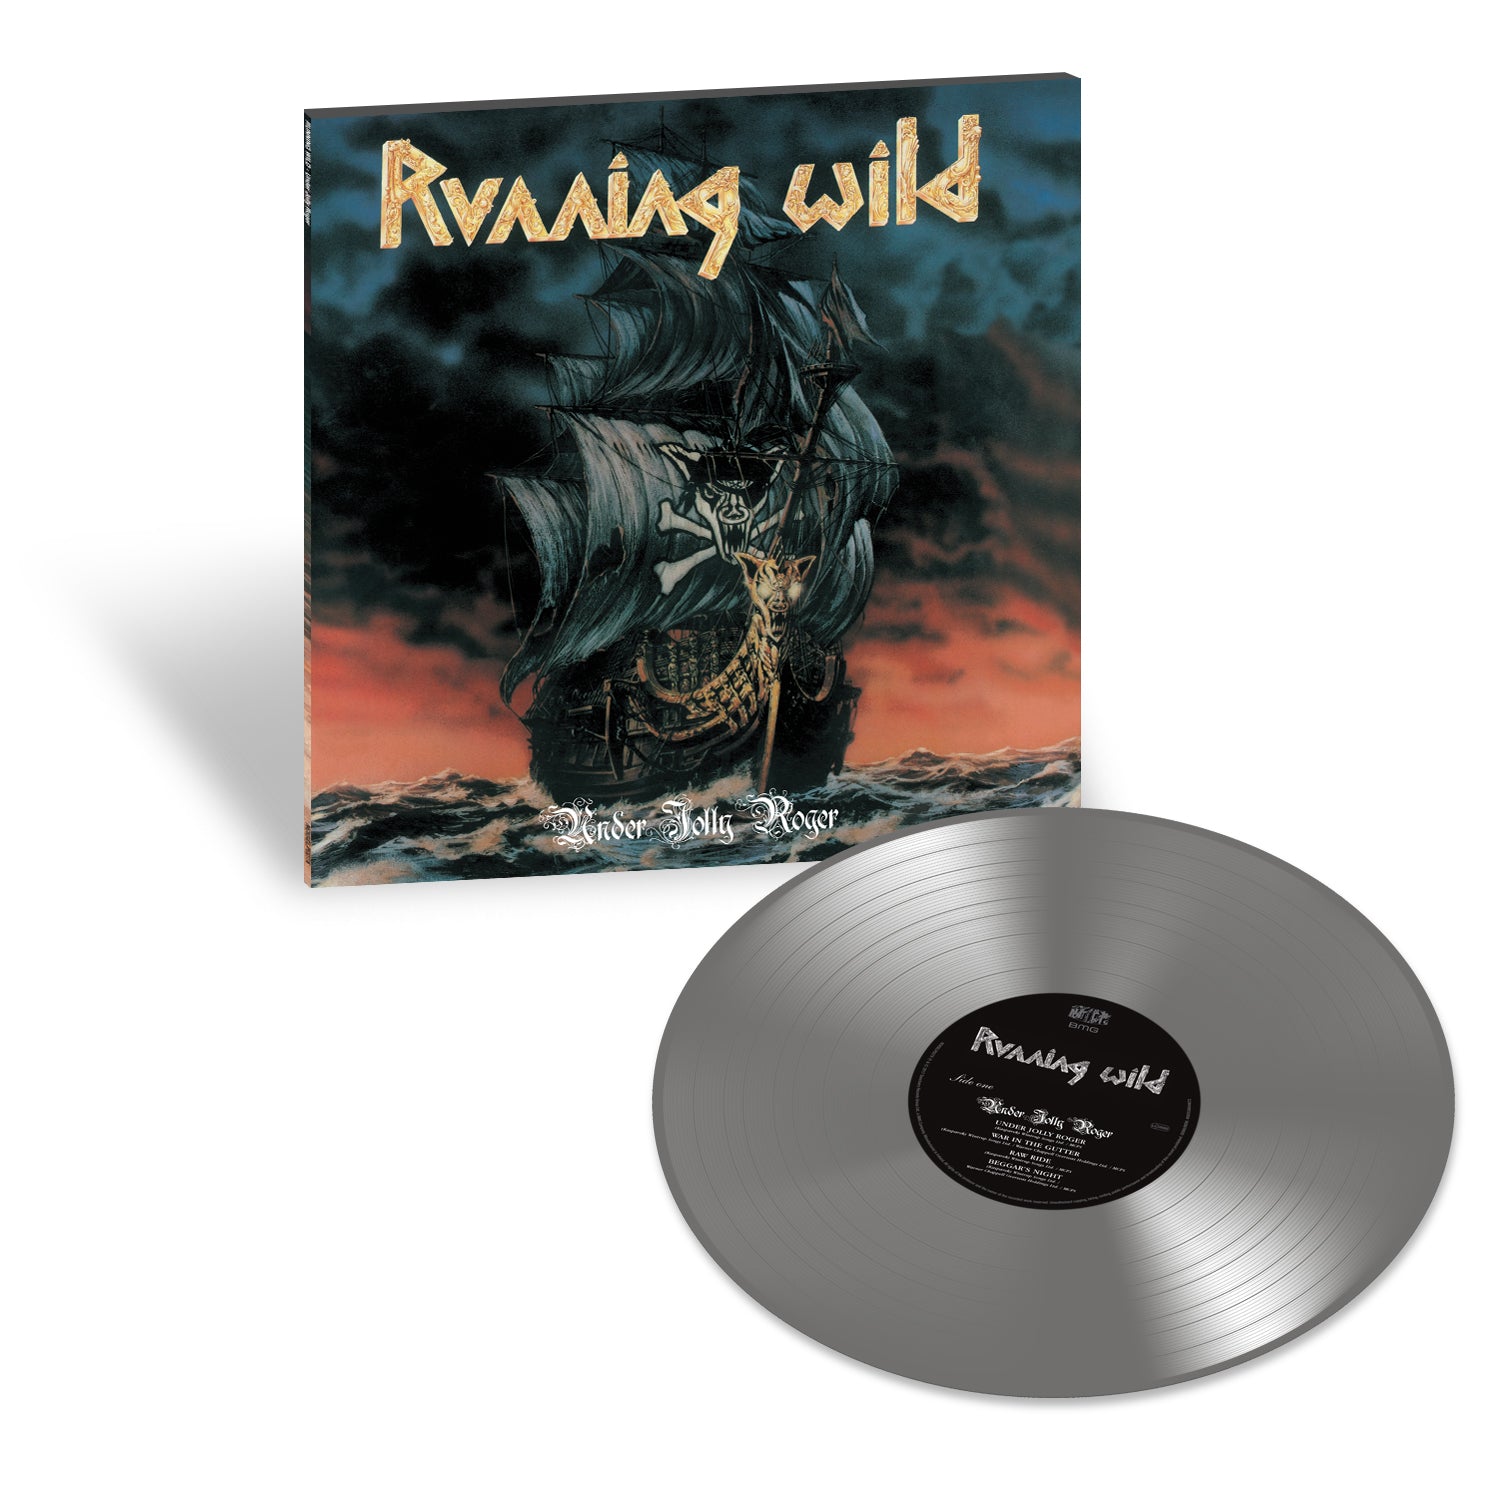 Running Wild - Under Jolly Roger: Limited Edition Grey Vinyl LP